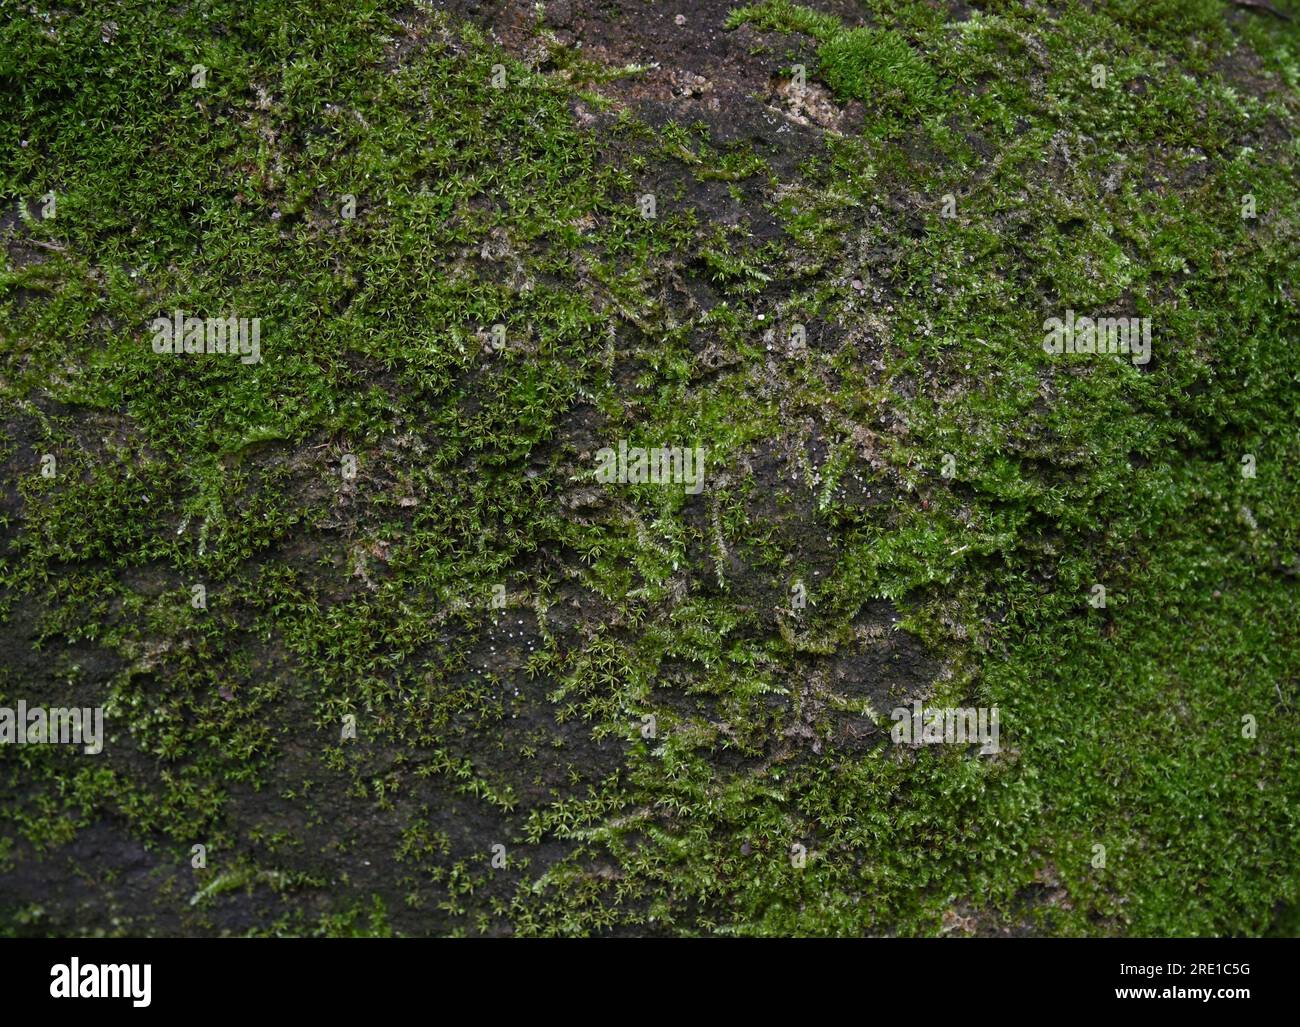 Vue rapprochée des mousses vertes poussant sur une surface d'un rocher dans un endroit sombre et humide Banque D'Images